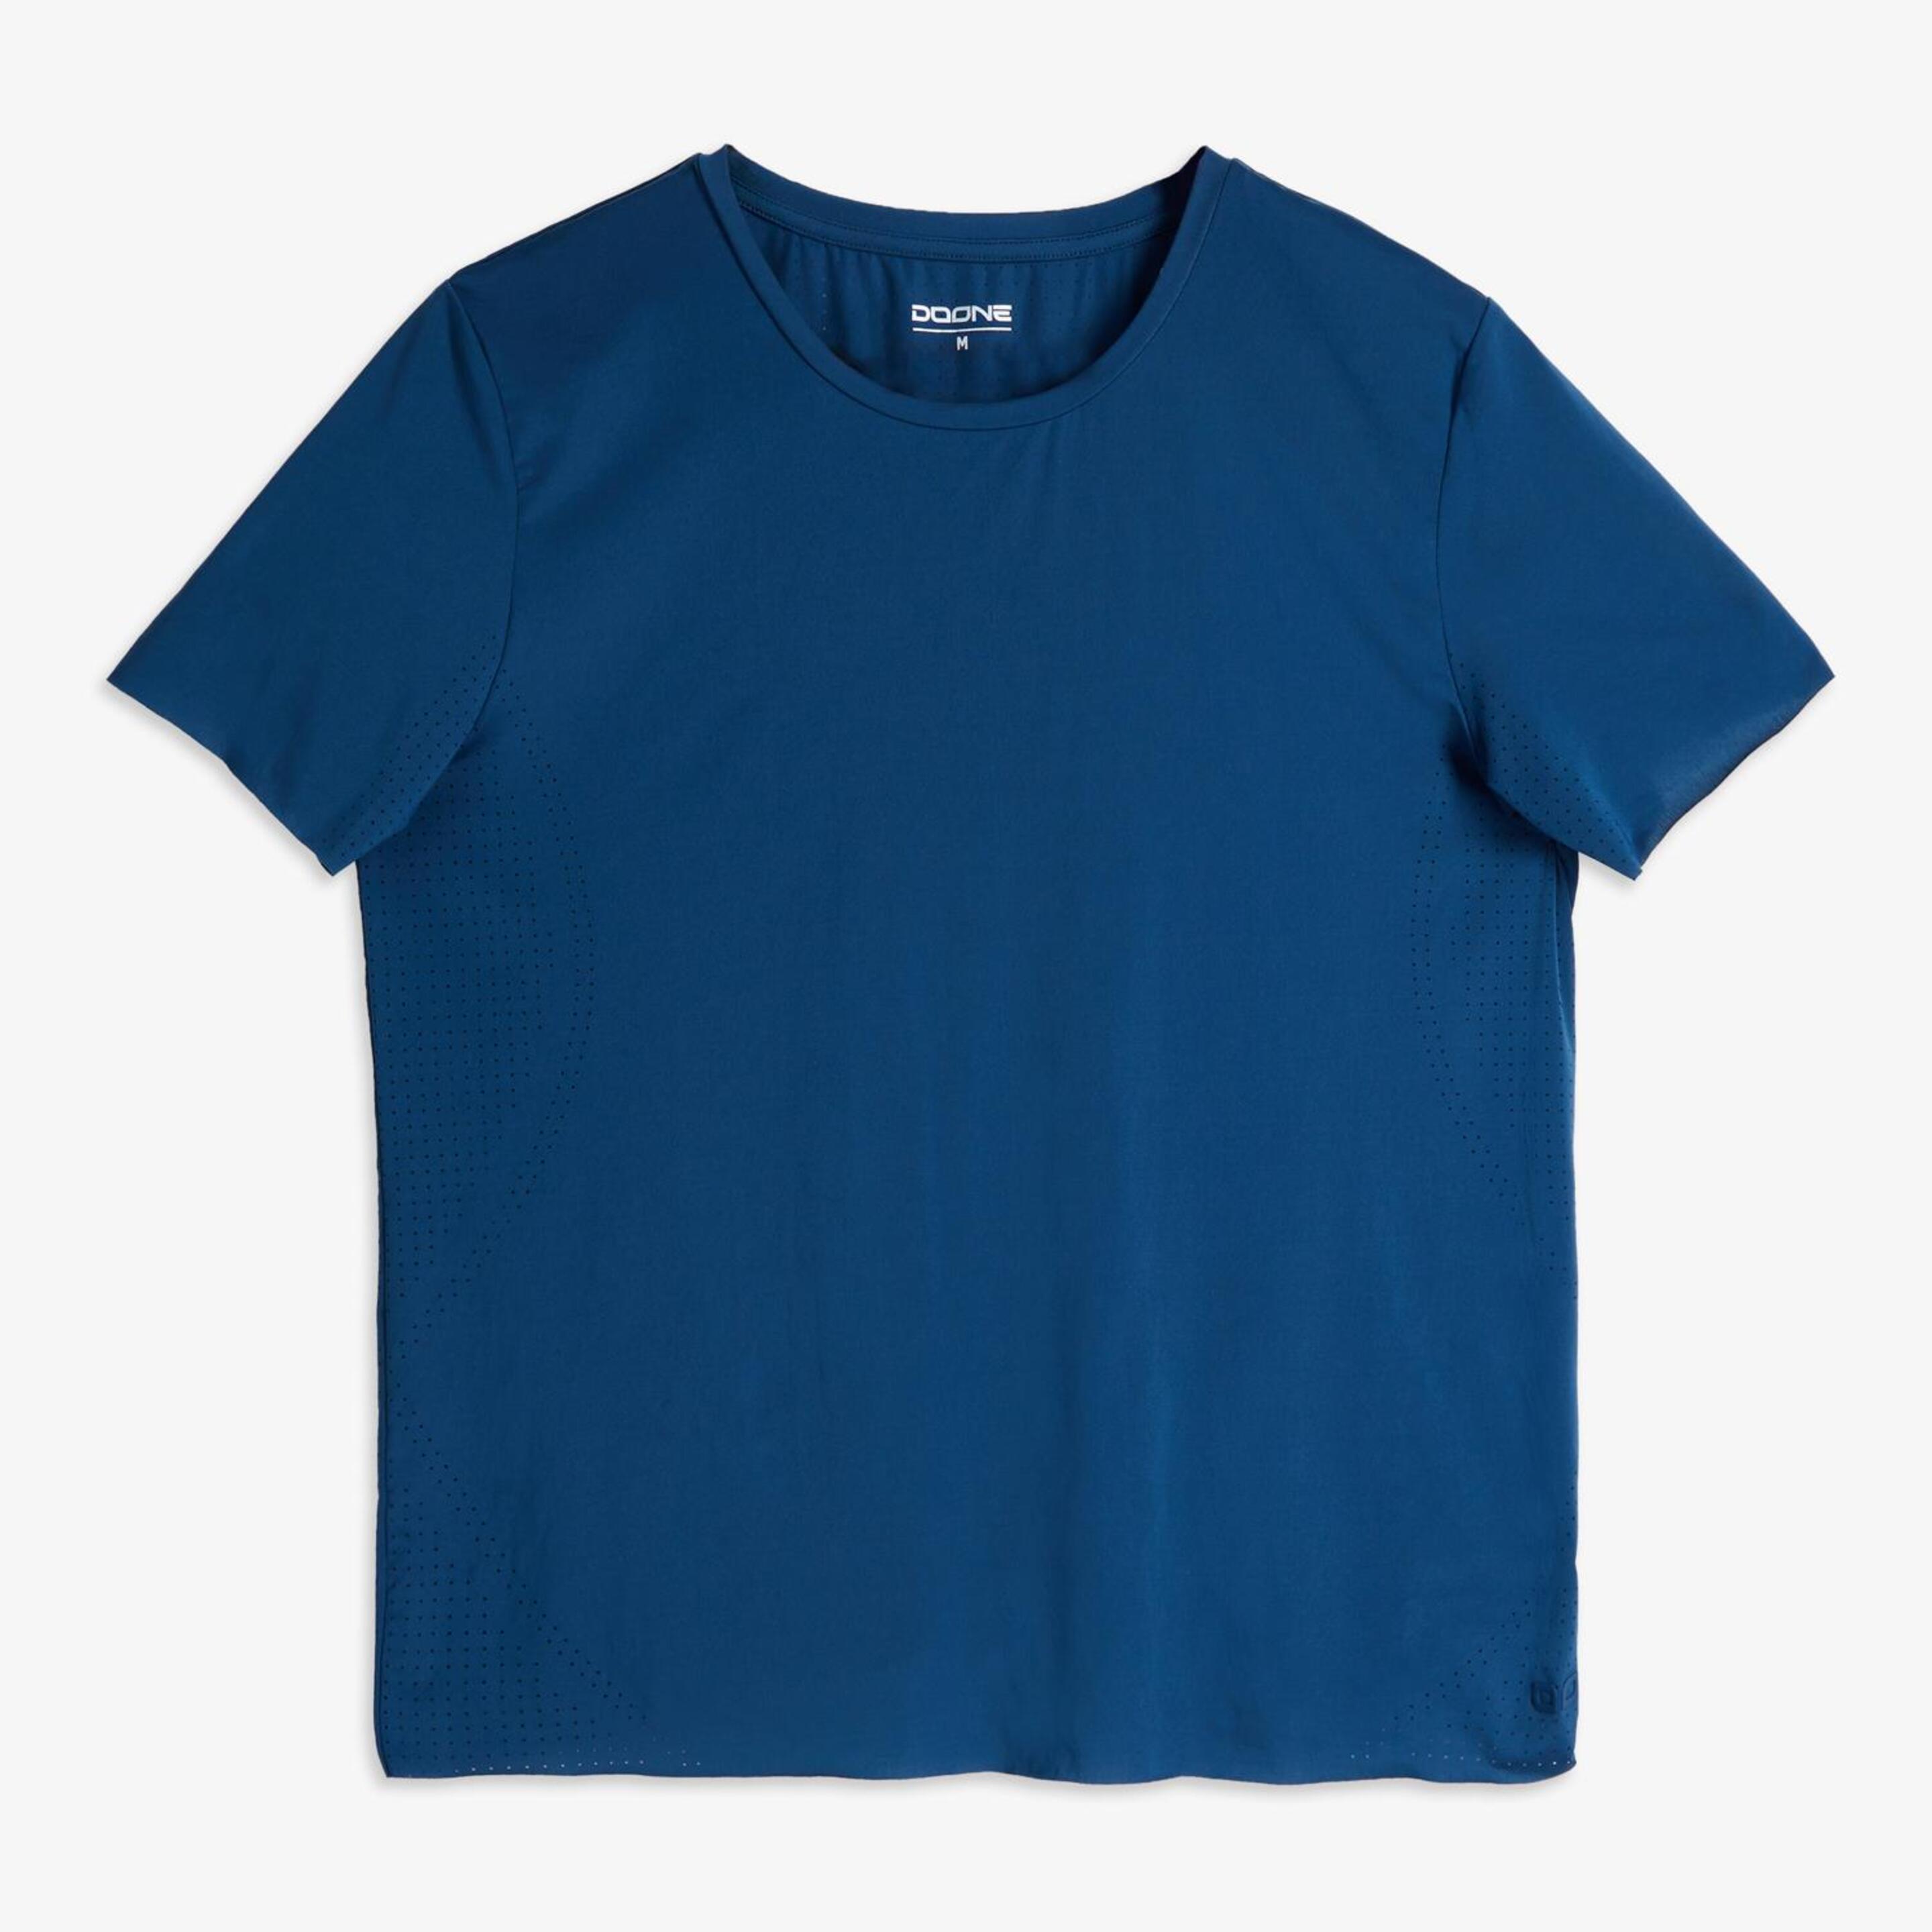 Doone Casual Luxe - Marino - Camiseta Mujer